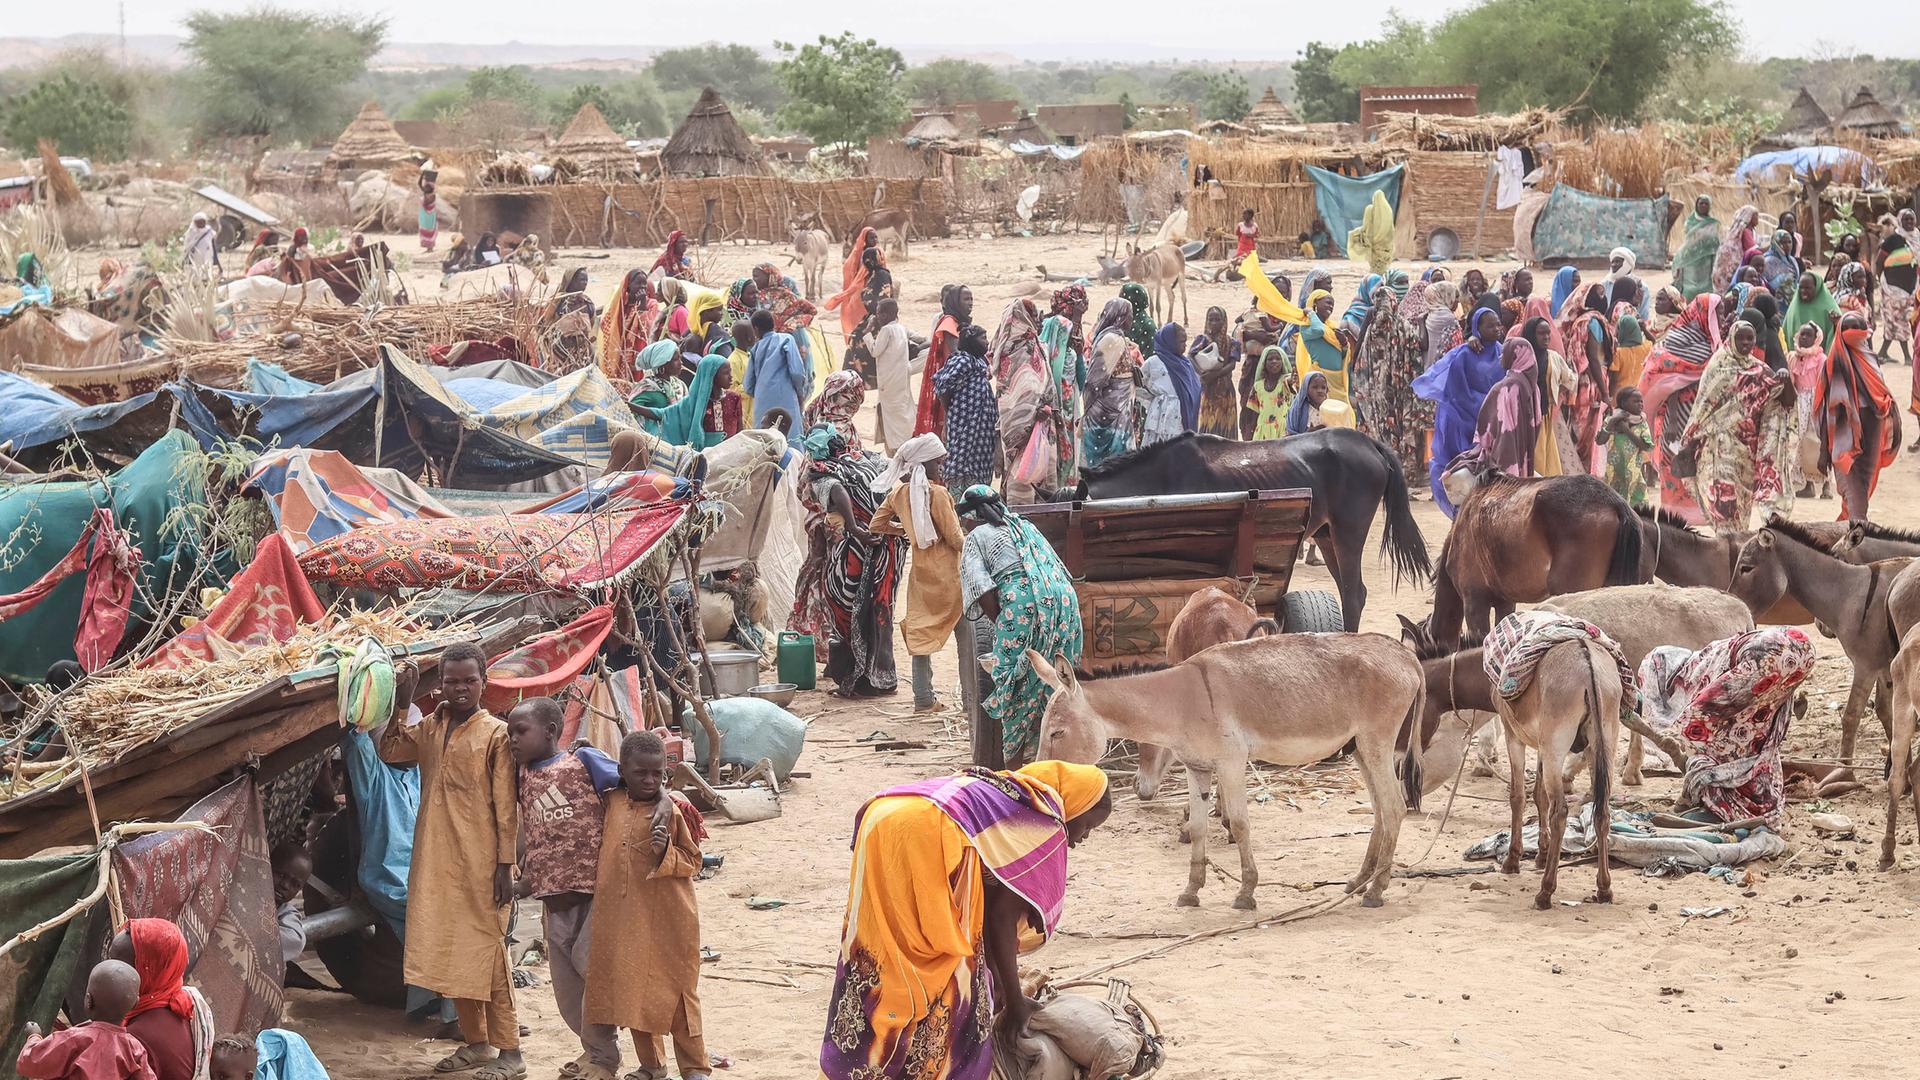 Aus dem Sudan geflüchtete Menschen im Tschad. Zu sehen sind vor allem Frauen und Kinder, die vor Lehmhütten und neben provisorischen Unterständen stehen.